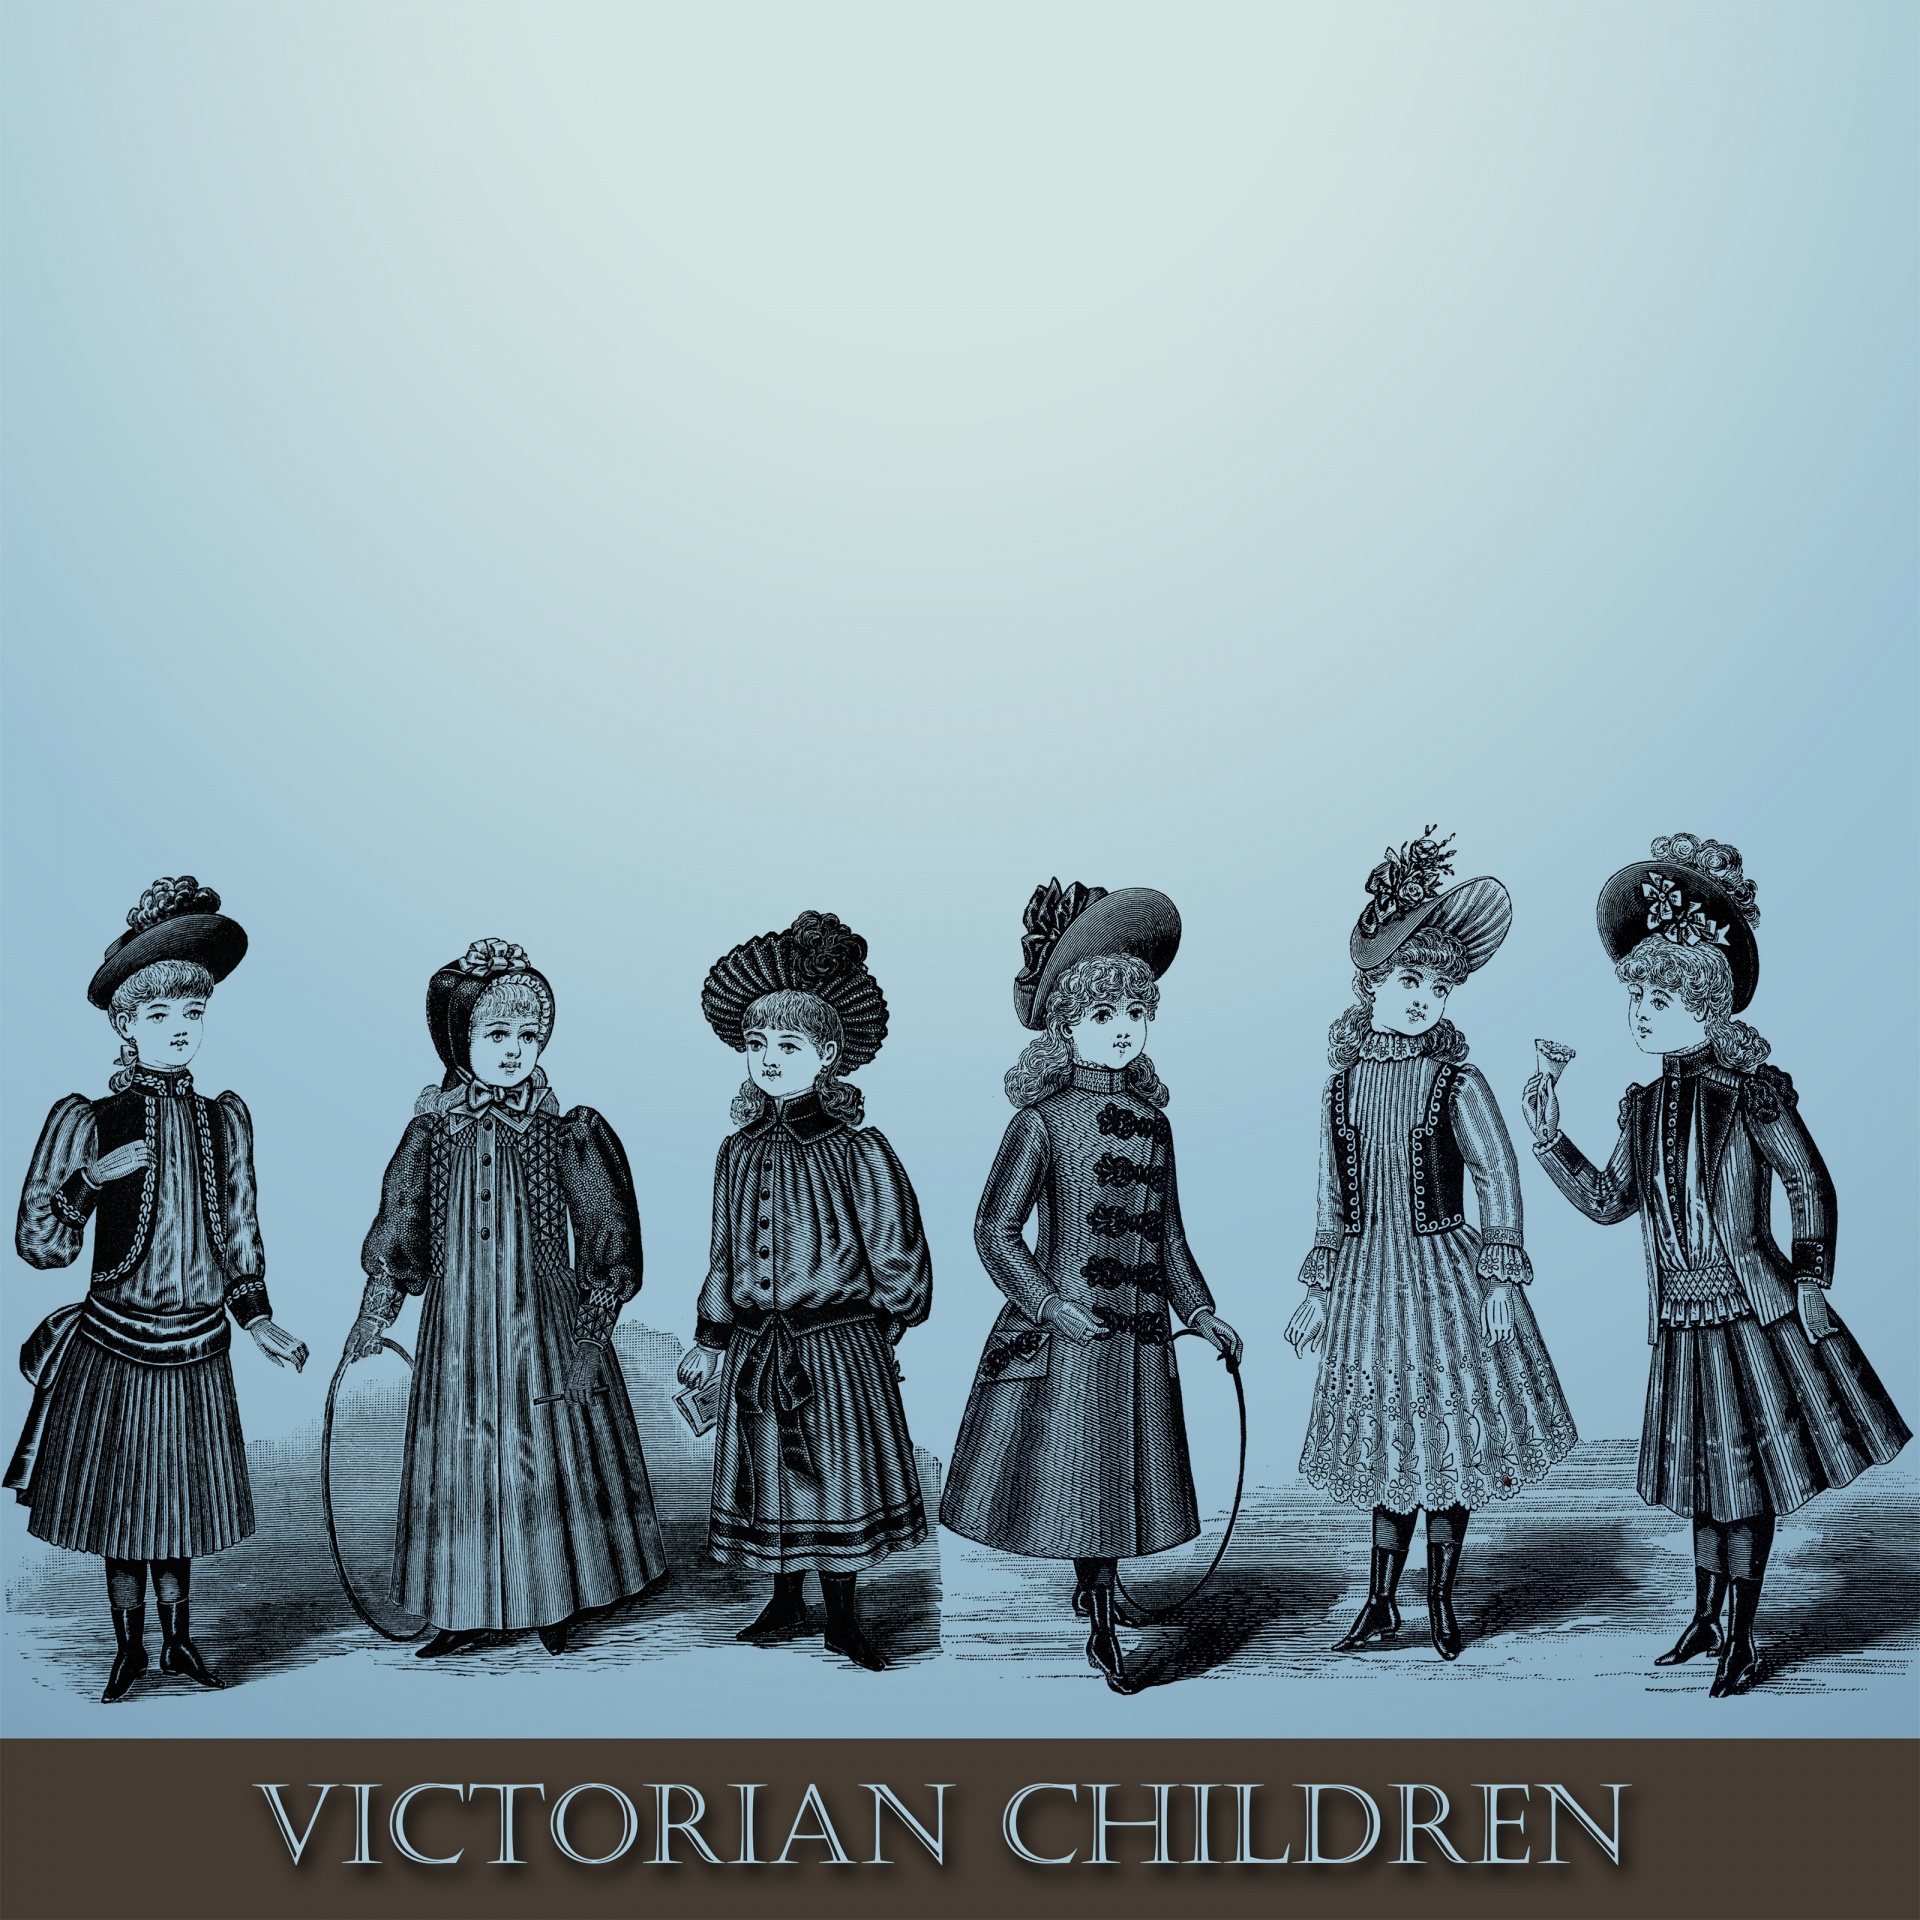 children vintage victorian illustration free photo